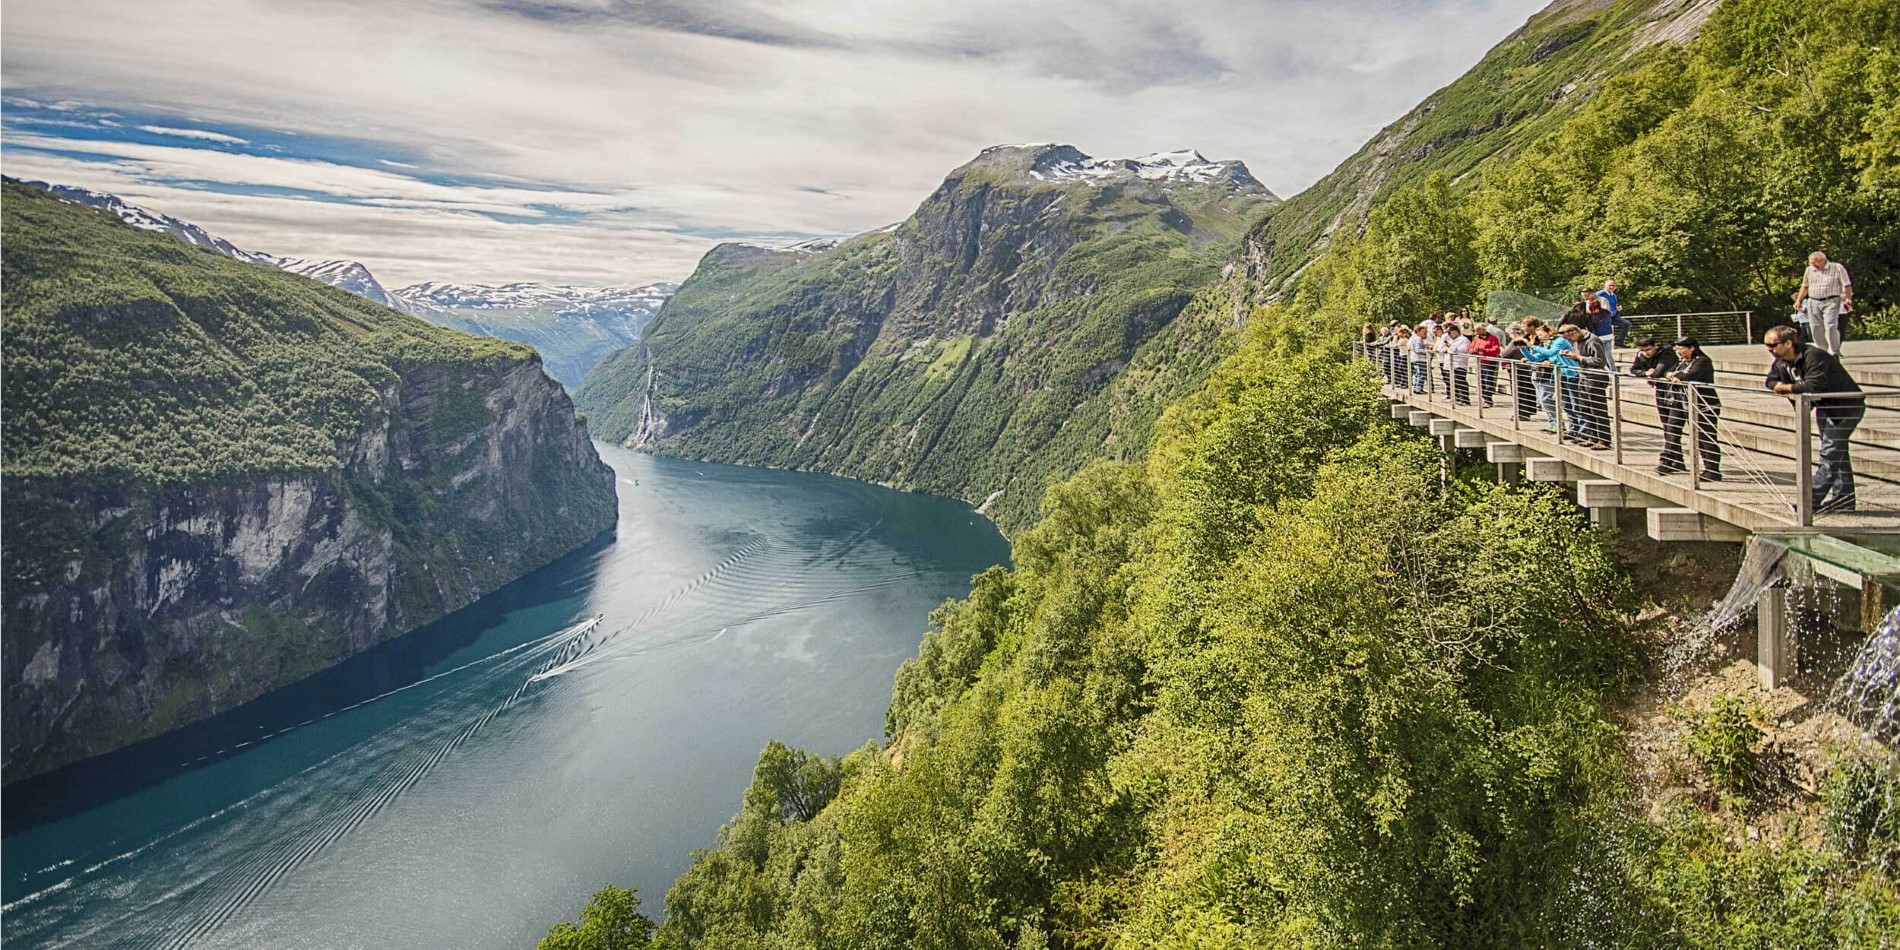 Sejle med Hurtigruten i sommermånederne (Jun-aug) og oplev den fantastiske Geirangerfjord tæt på.